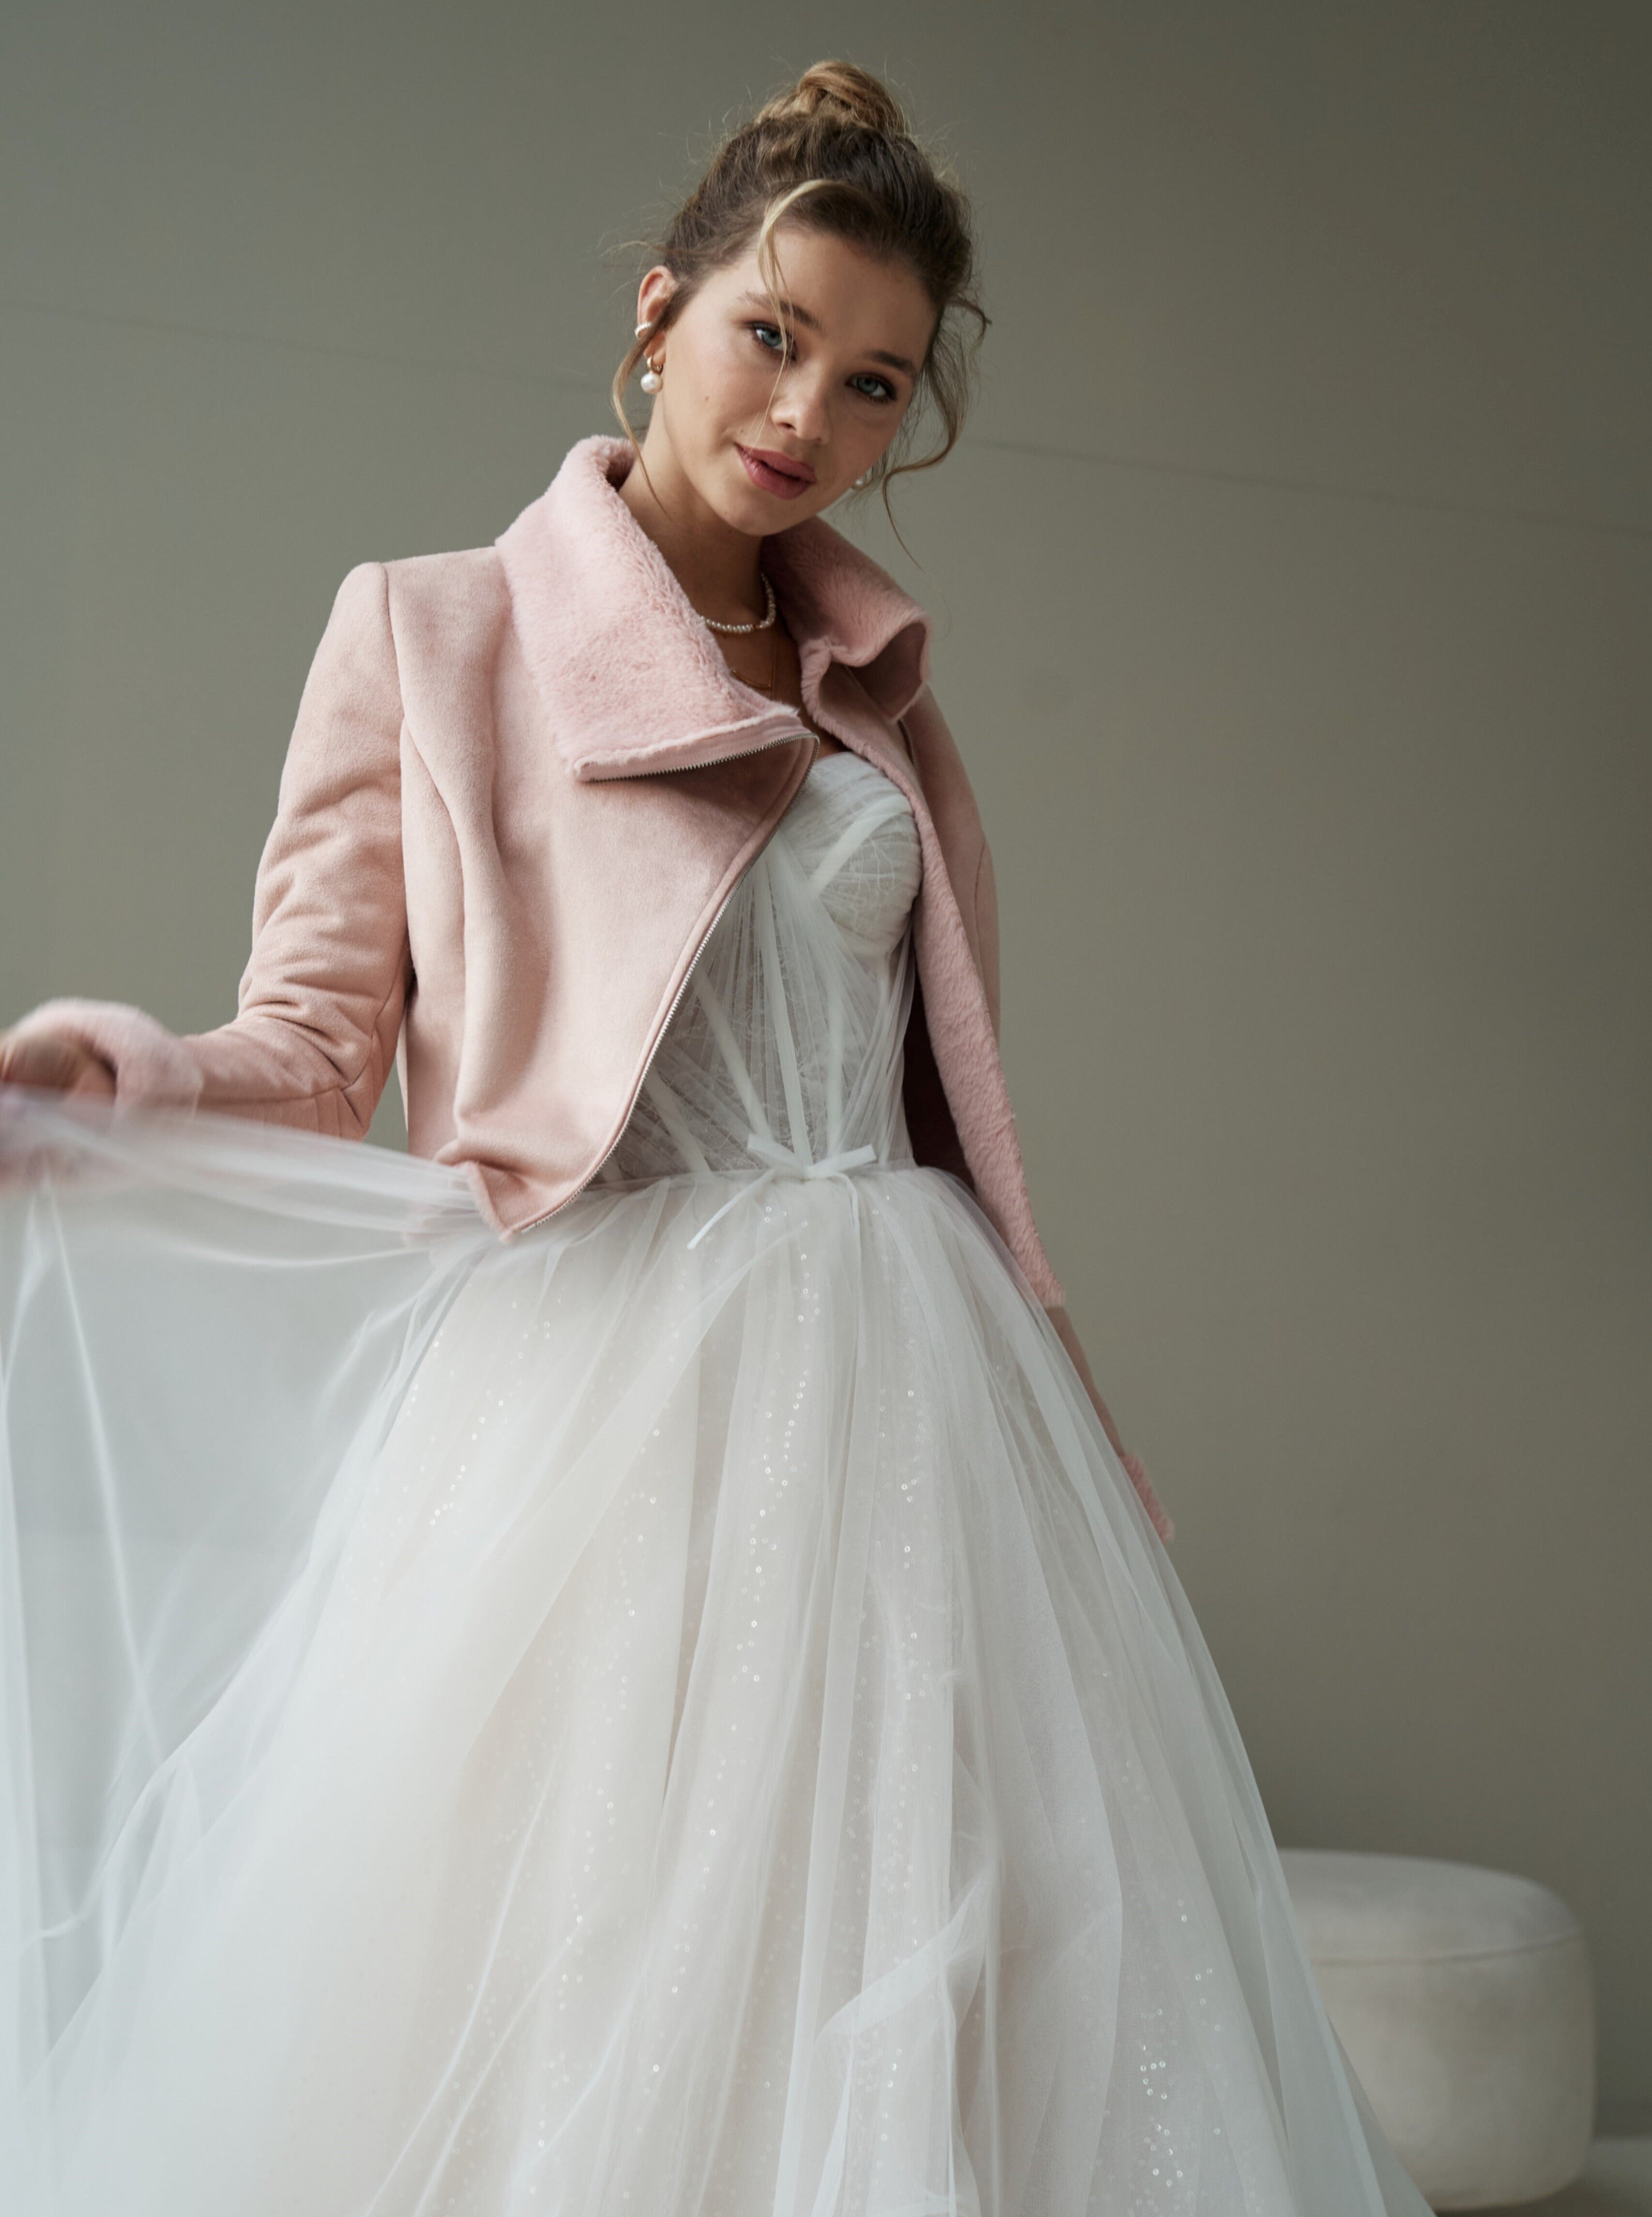 Wedding Bridal Faux Fur Jacket. Wedding sheepskin coat for bride in pink color.